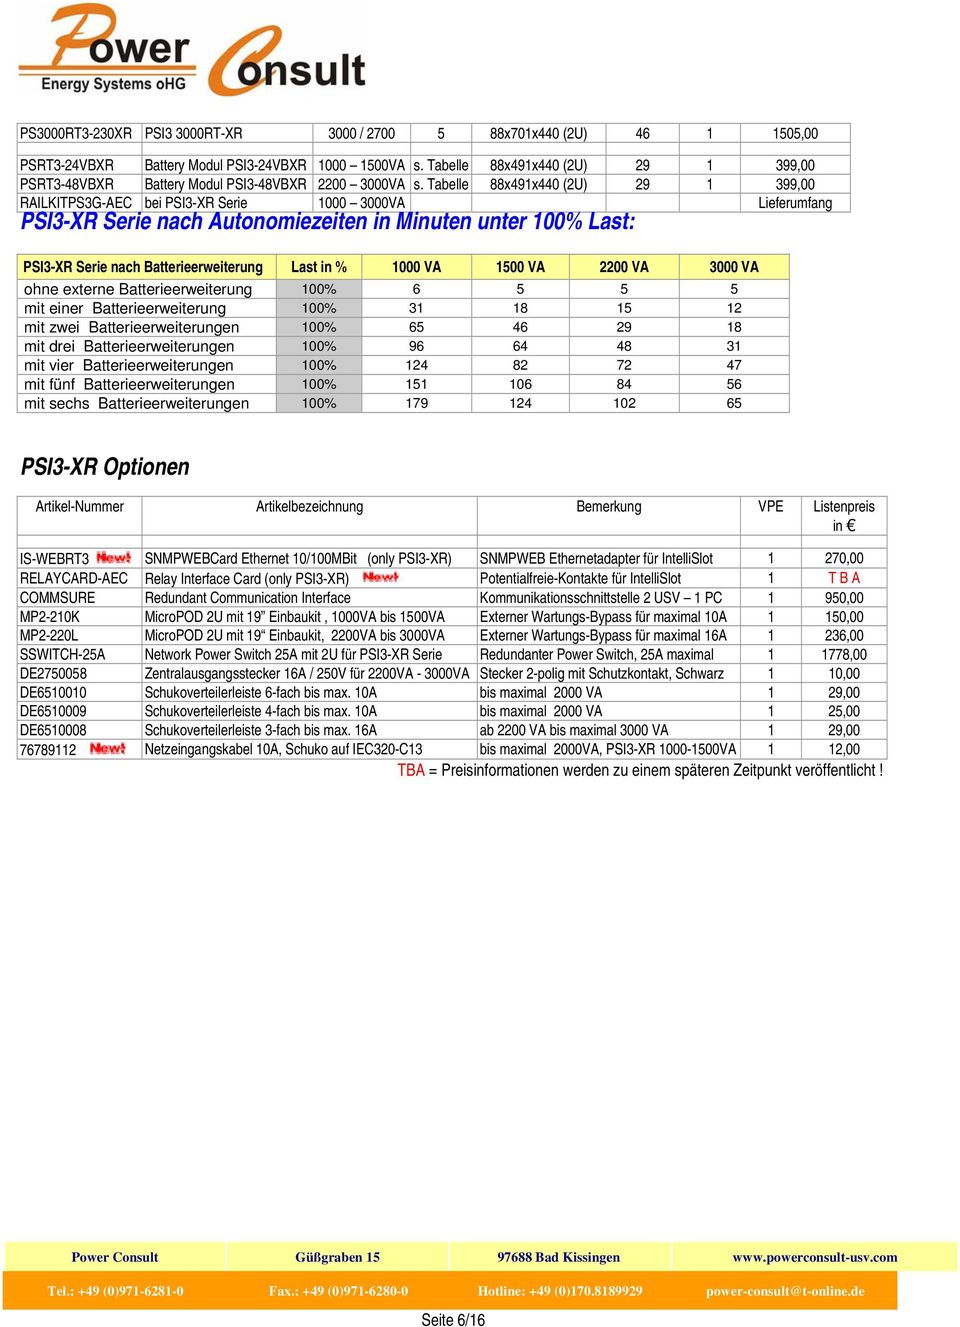 Tabelle 88x491x440 (2U) 29 1 399,00 RAILKITPS3G-AEC bei PSI3-XR Serie 1000 3000VA Lieferumfang PSI3-XR Serie nach Autonomiezeiten in Minuten unter 100% Last: PSI3-XR Serie nach Batterieerweiterung